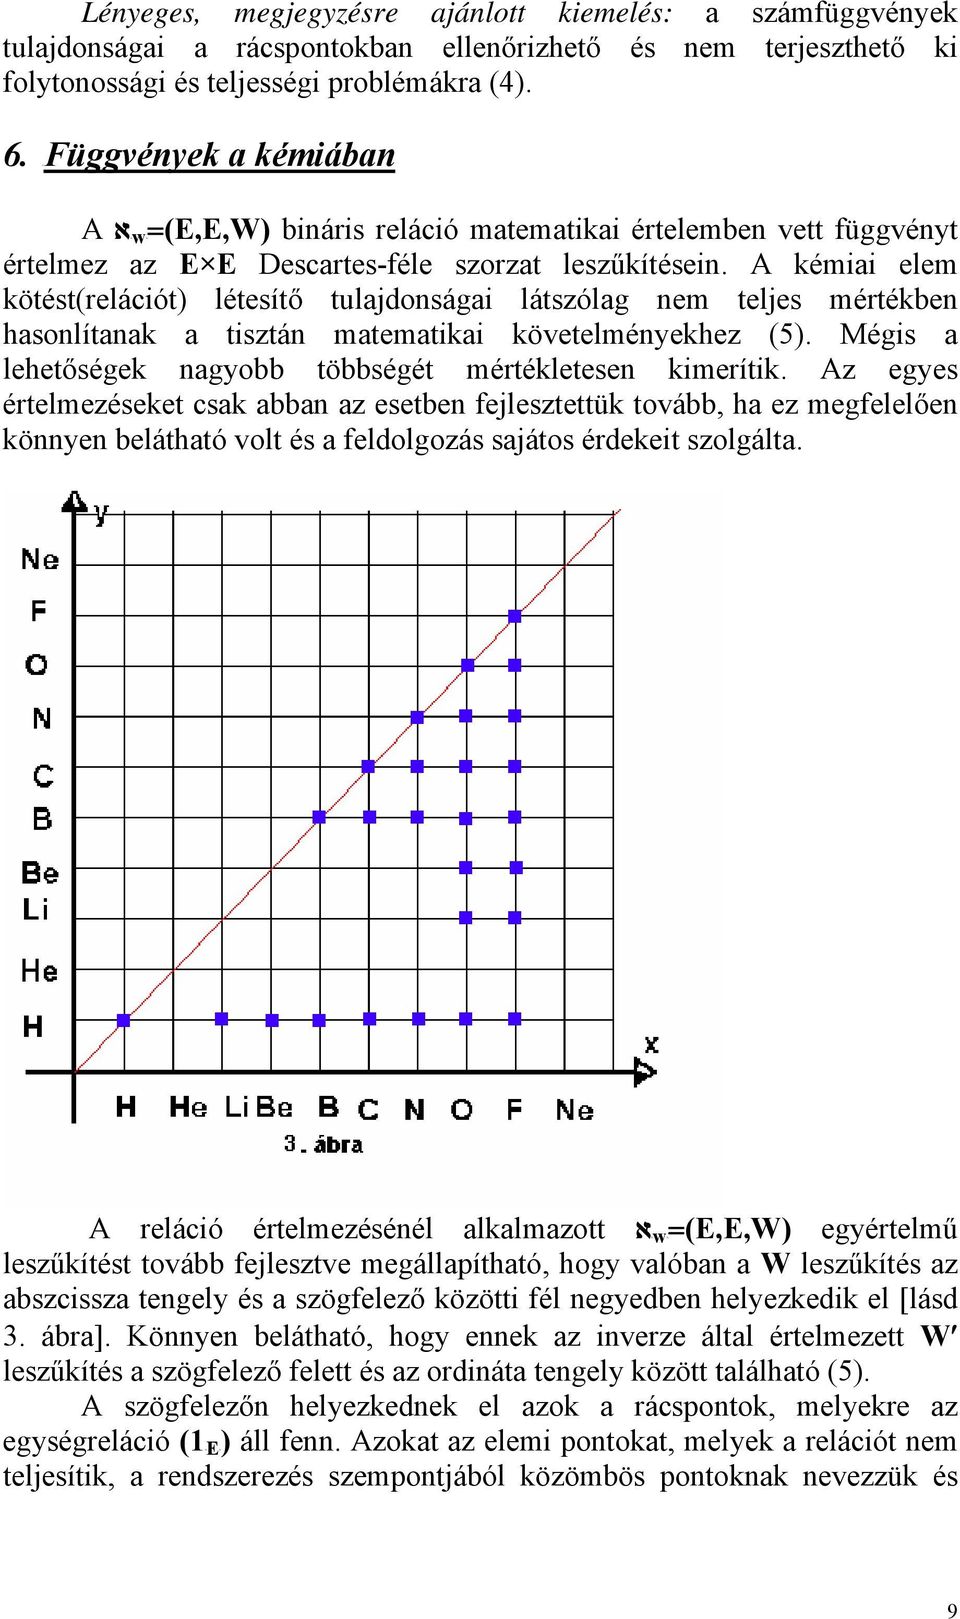 A kémiai elem kötést(relációt) létesítő tulajdonságai látszólag nem teljes mértékben hasonlítanak a tisztán matematikai követelményekhez (5).